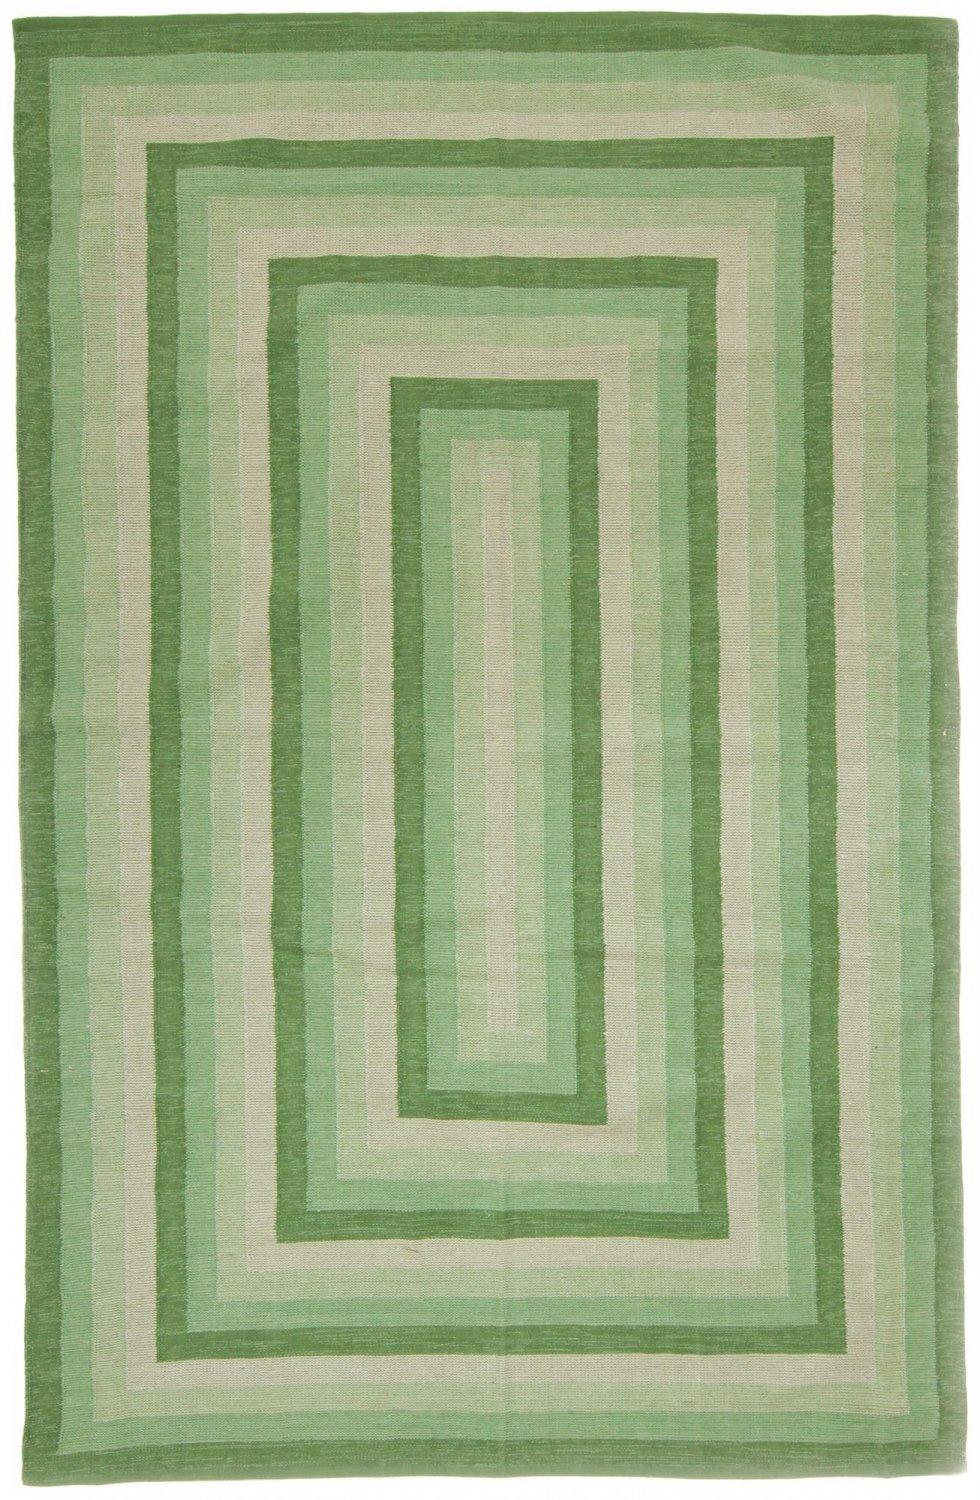 Voddenkleed - Chania (groen)